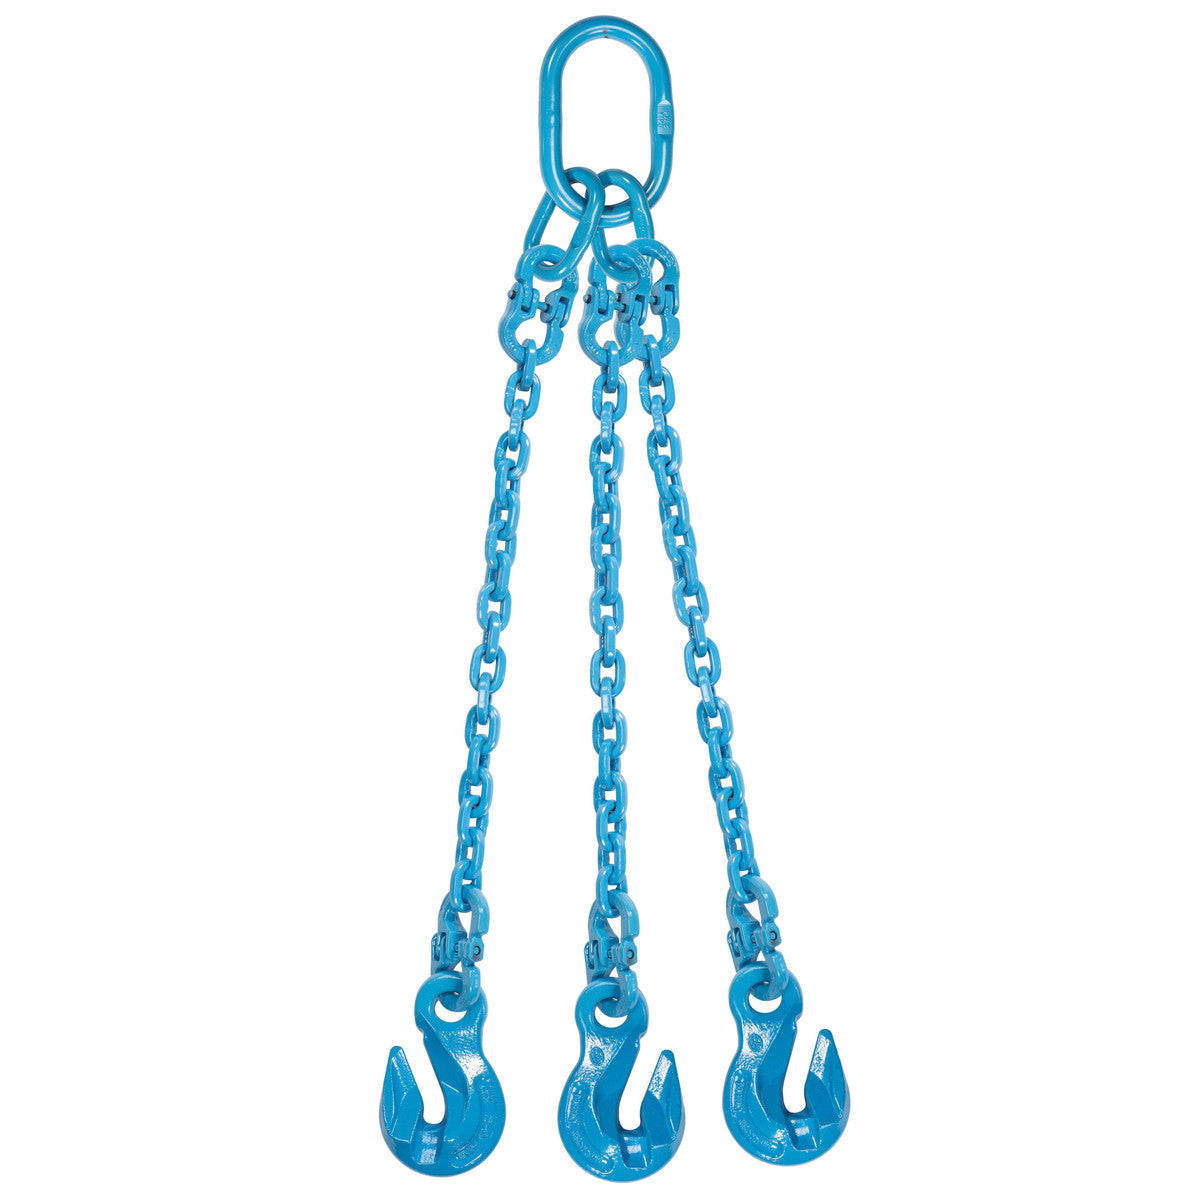 9/32" x 6' - Pewag 3 Leg Chain Sling w/ Grab Hooks - Grade 120